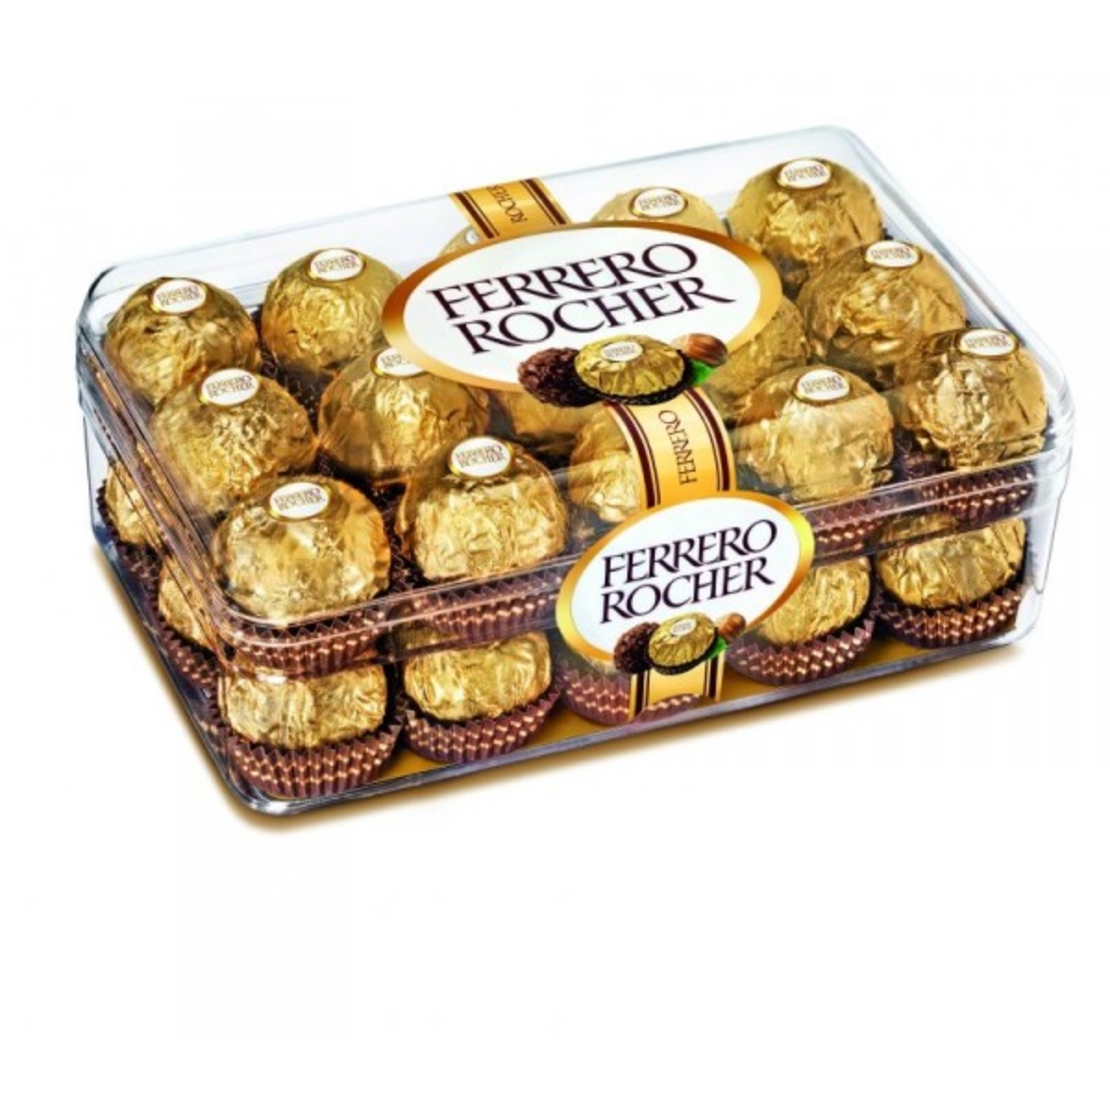 Ferrero Rocher -26+4 Limited Edition 375g 